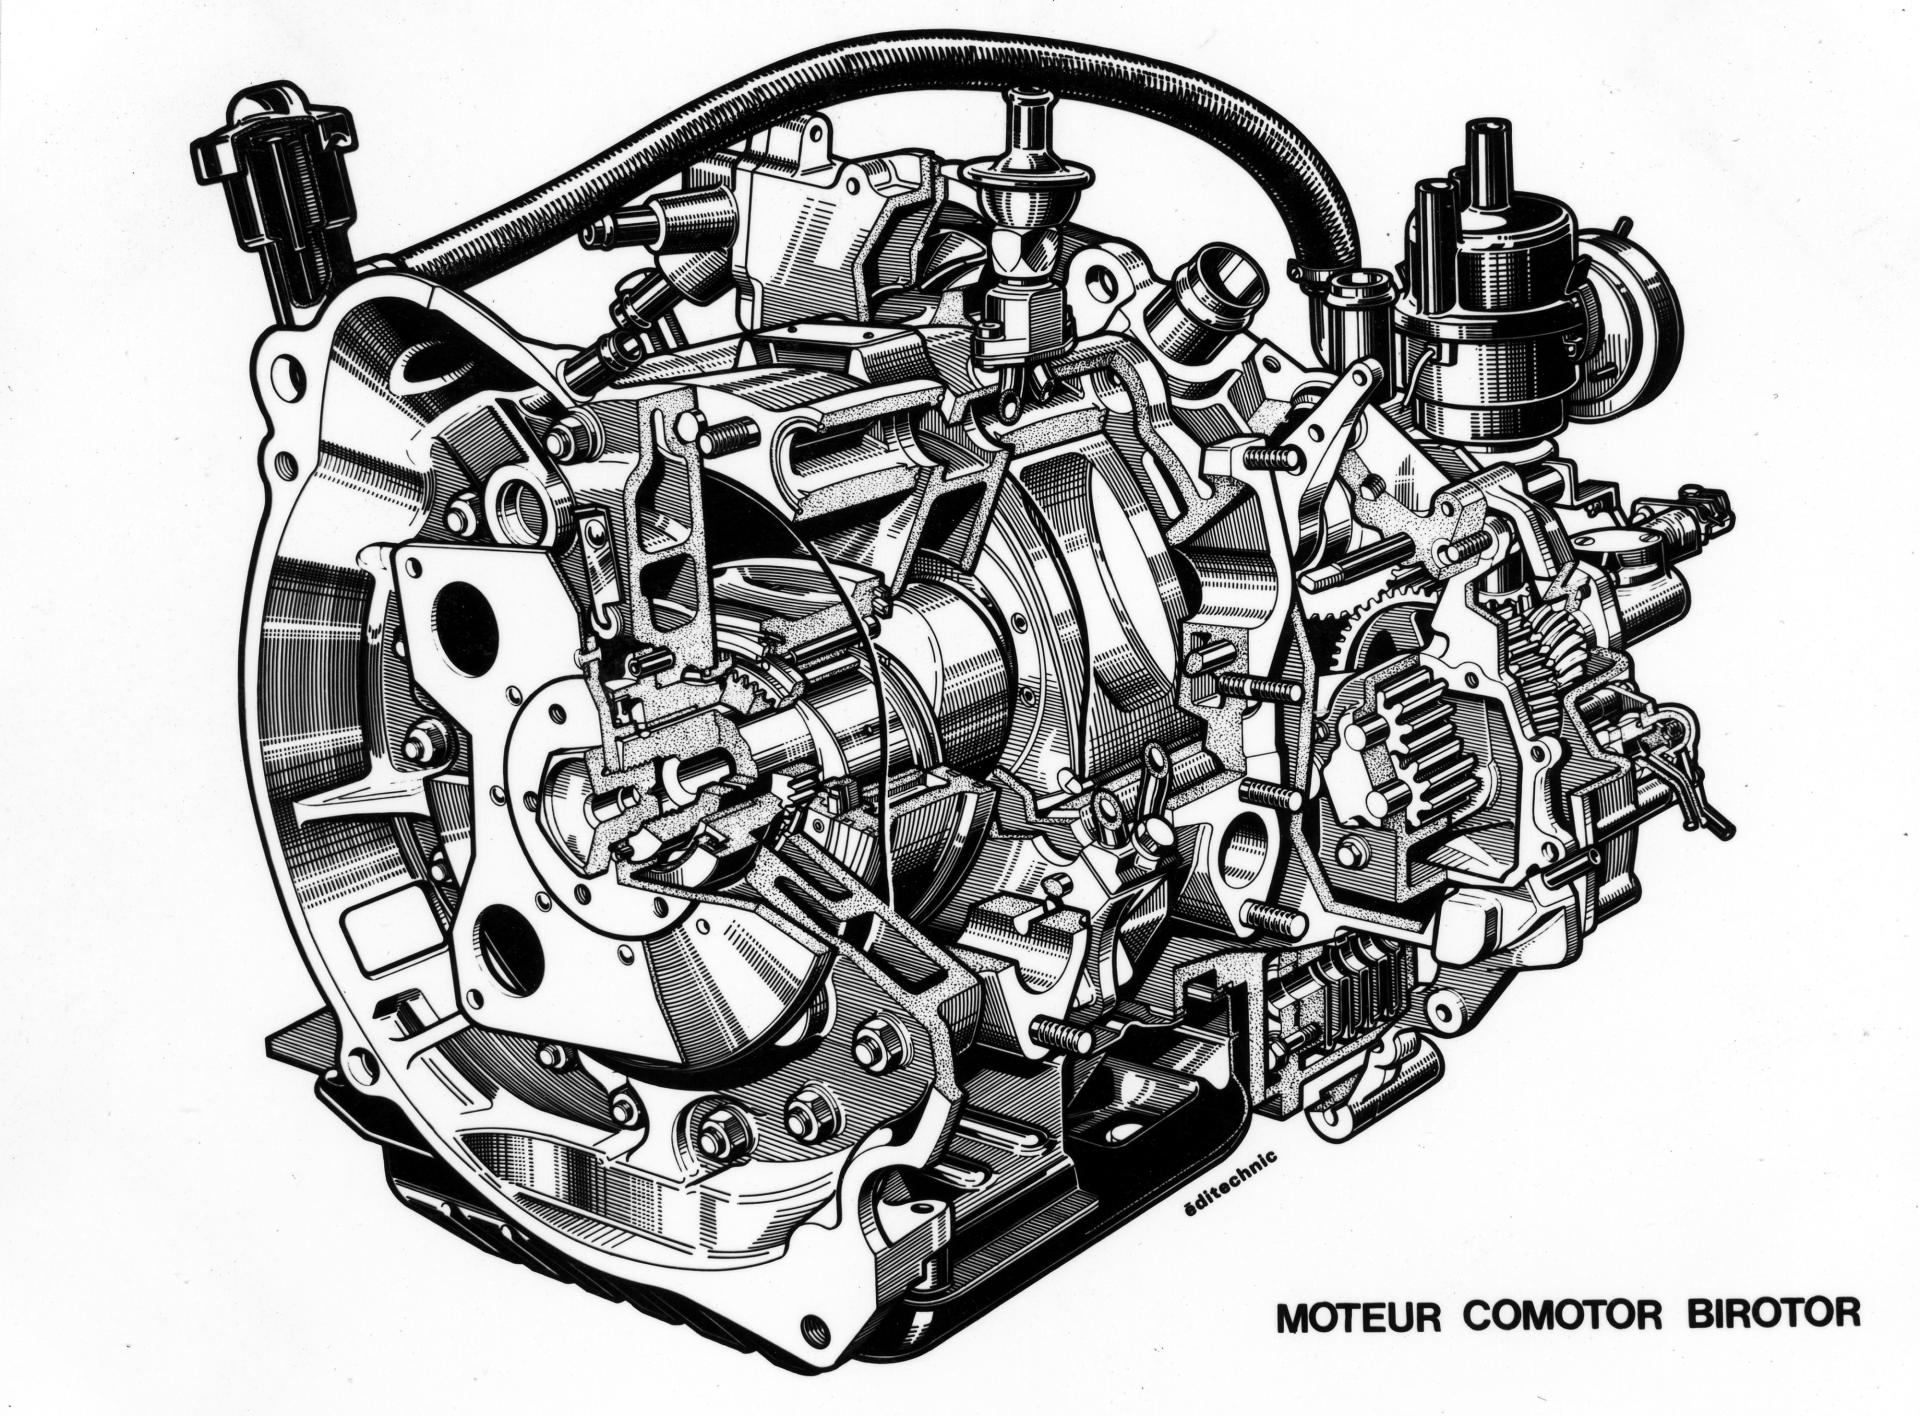 Schema moteur Comotor Birotor